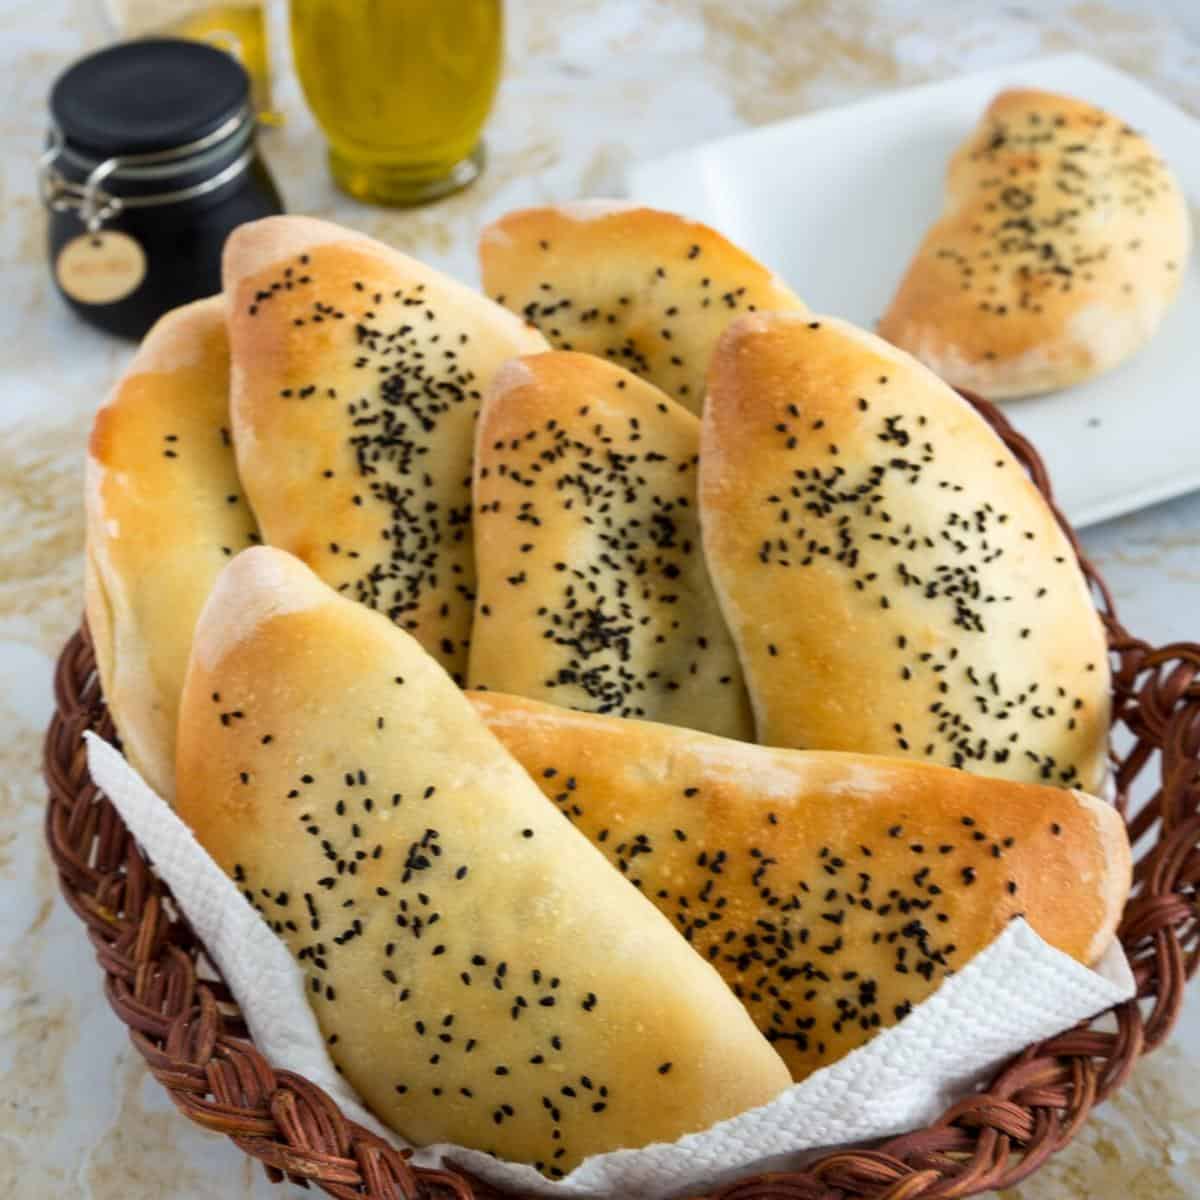 A basket with stuffed pita breads.